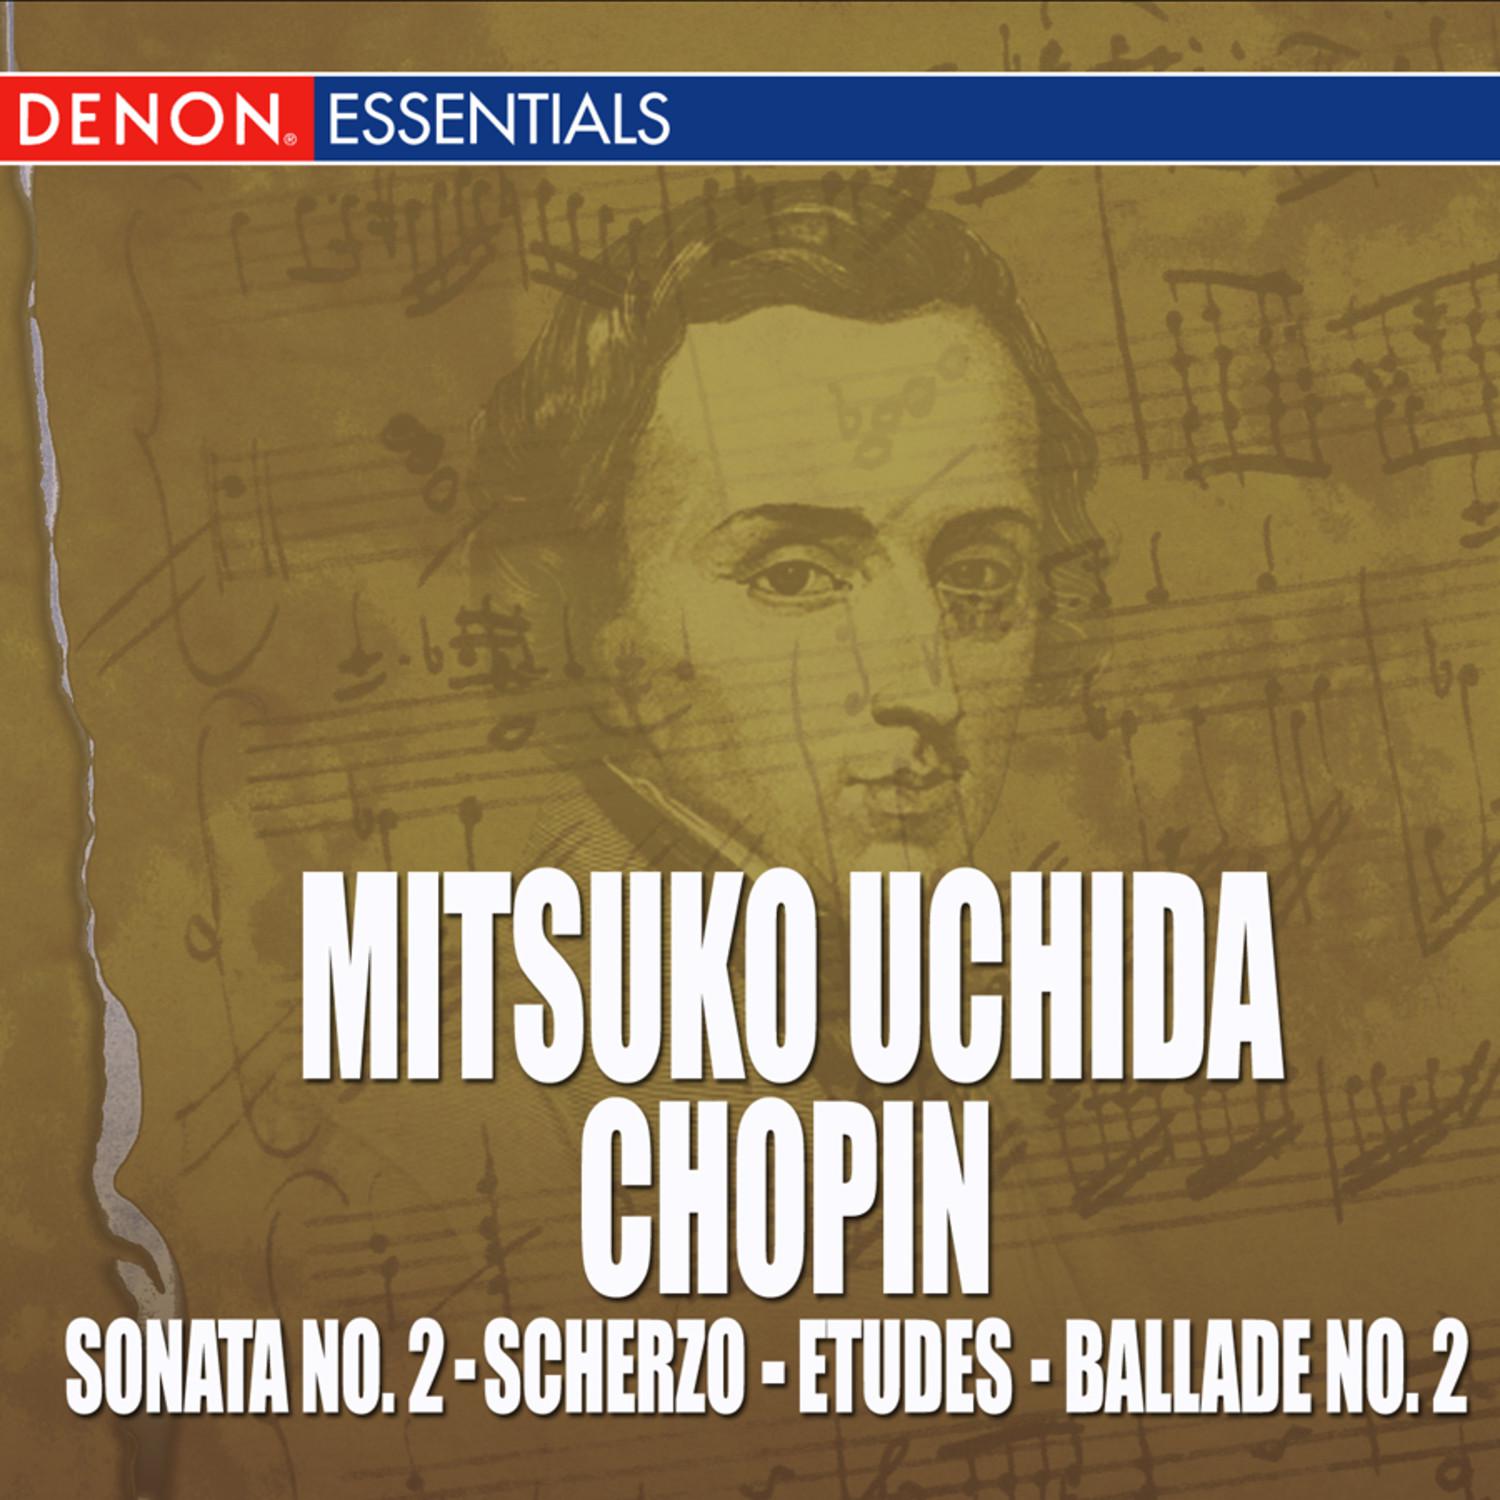 Scherzo No. 3 in C-Sharp Minor, Op. 39